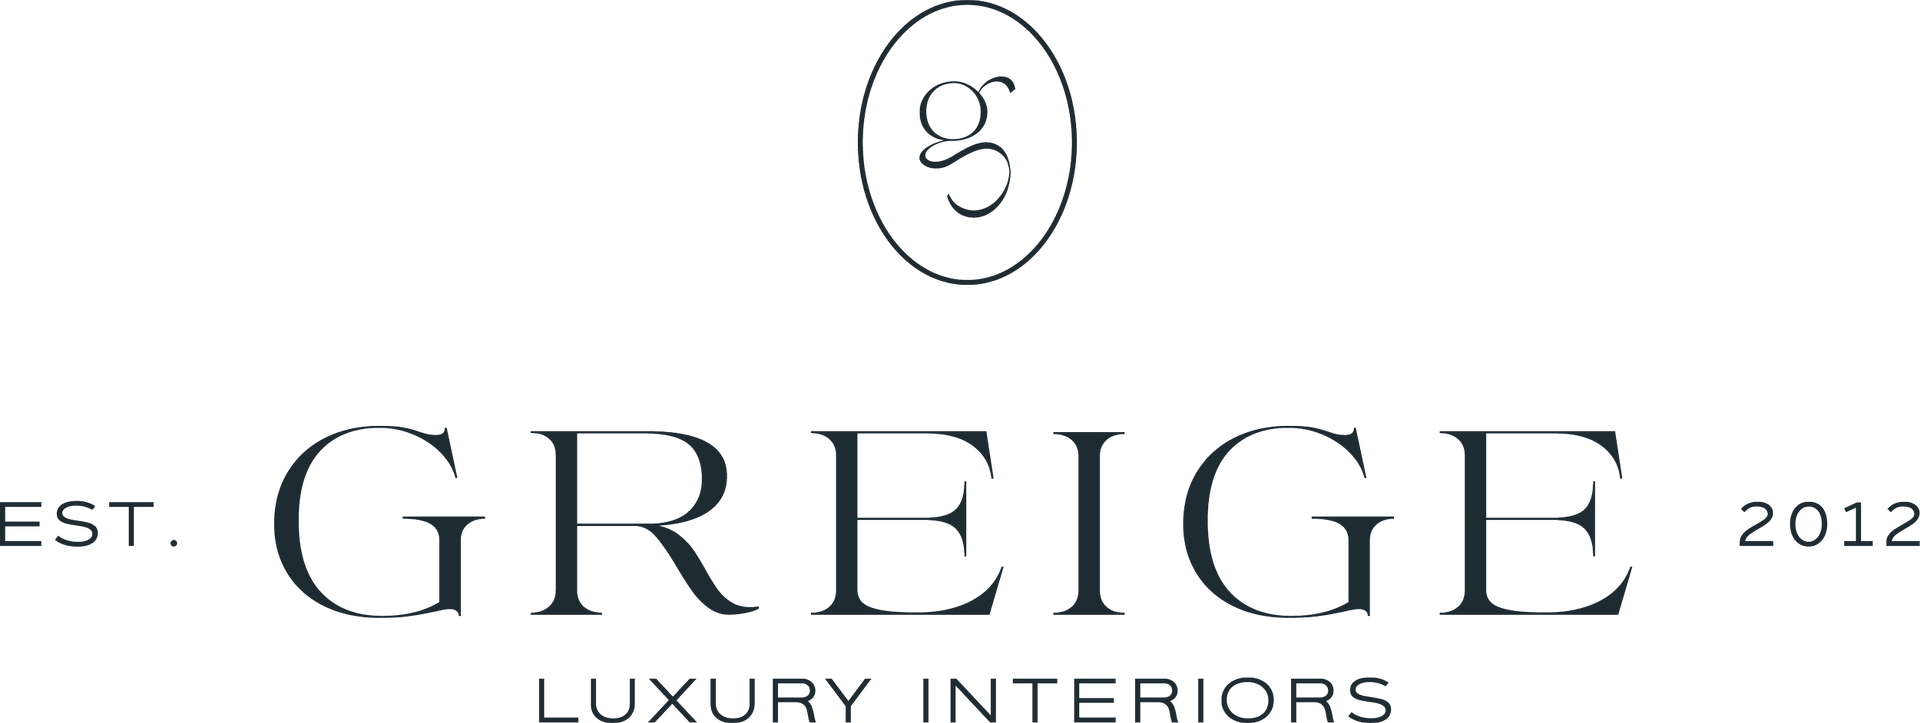 Greige Luxury Interiors Logo